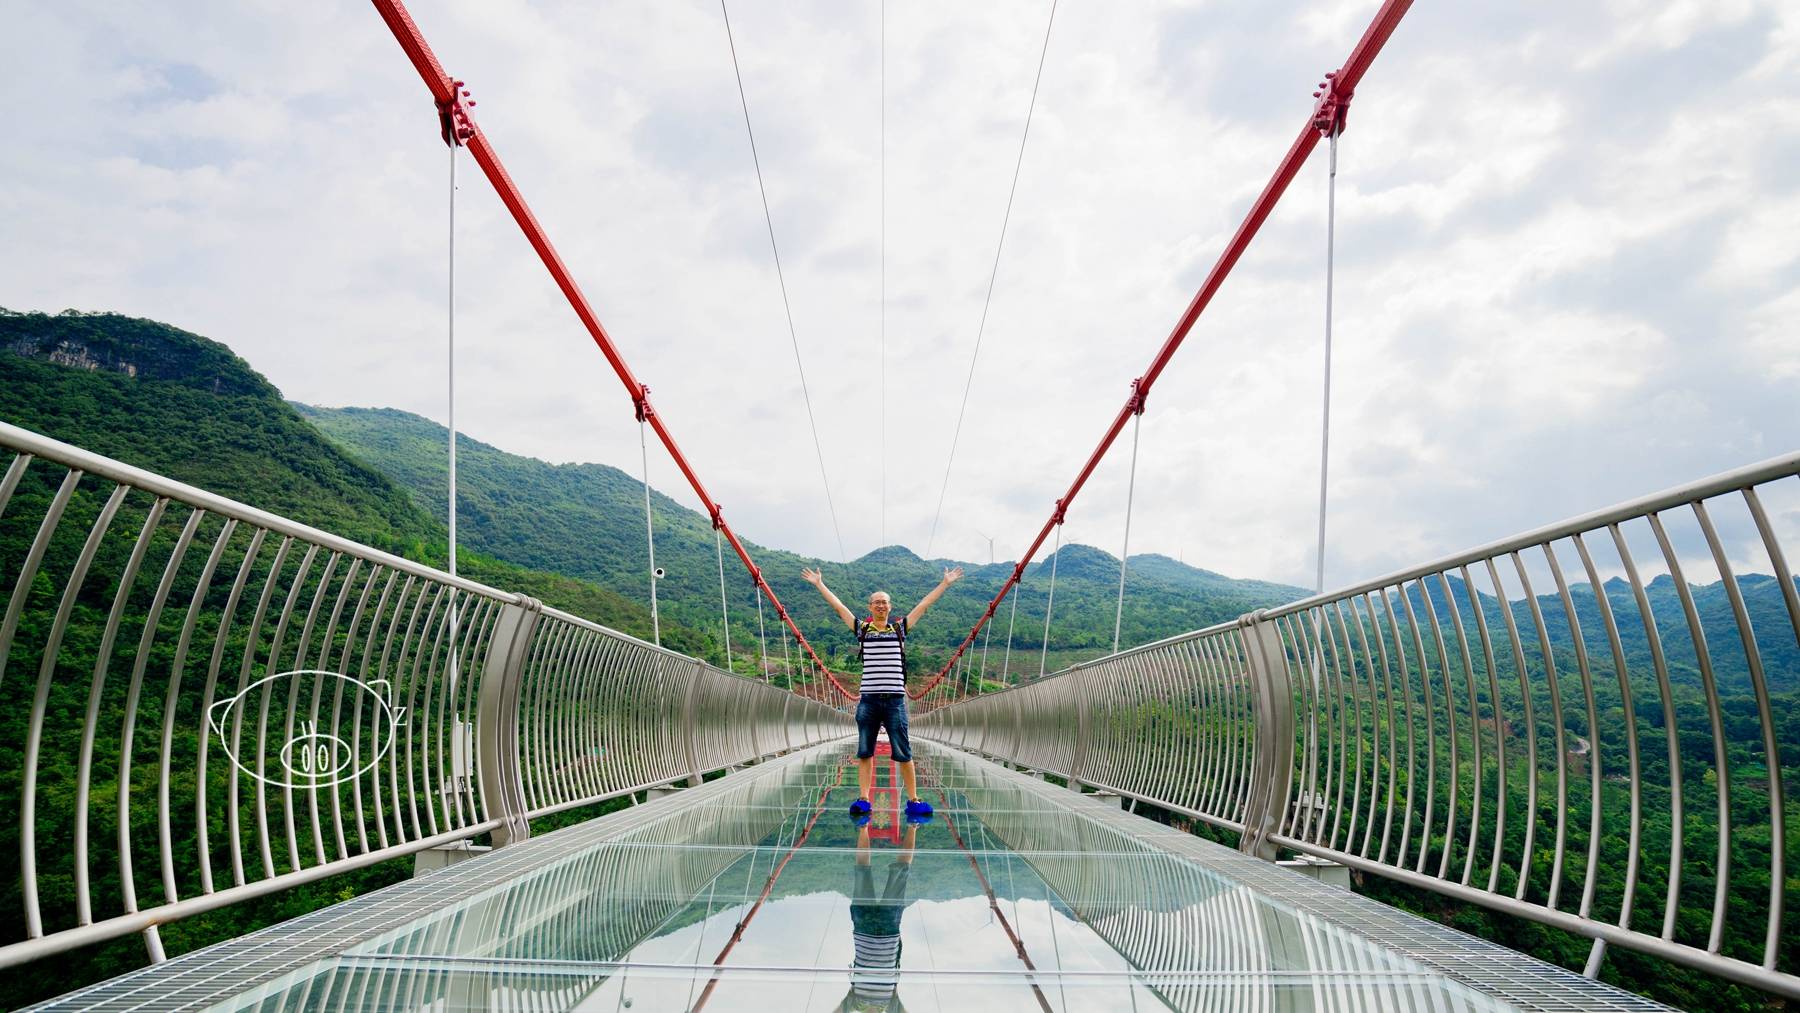 清远|世界最长玻璃桥易主,连州湟川三峡擎天玻璃桥登上吉尼斯世界记录